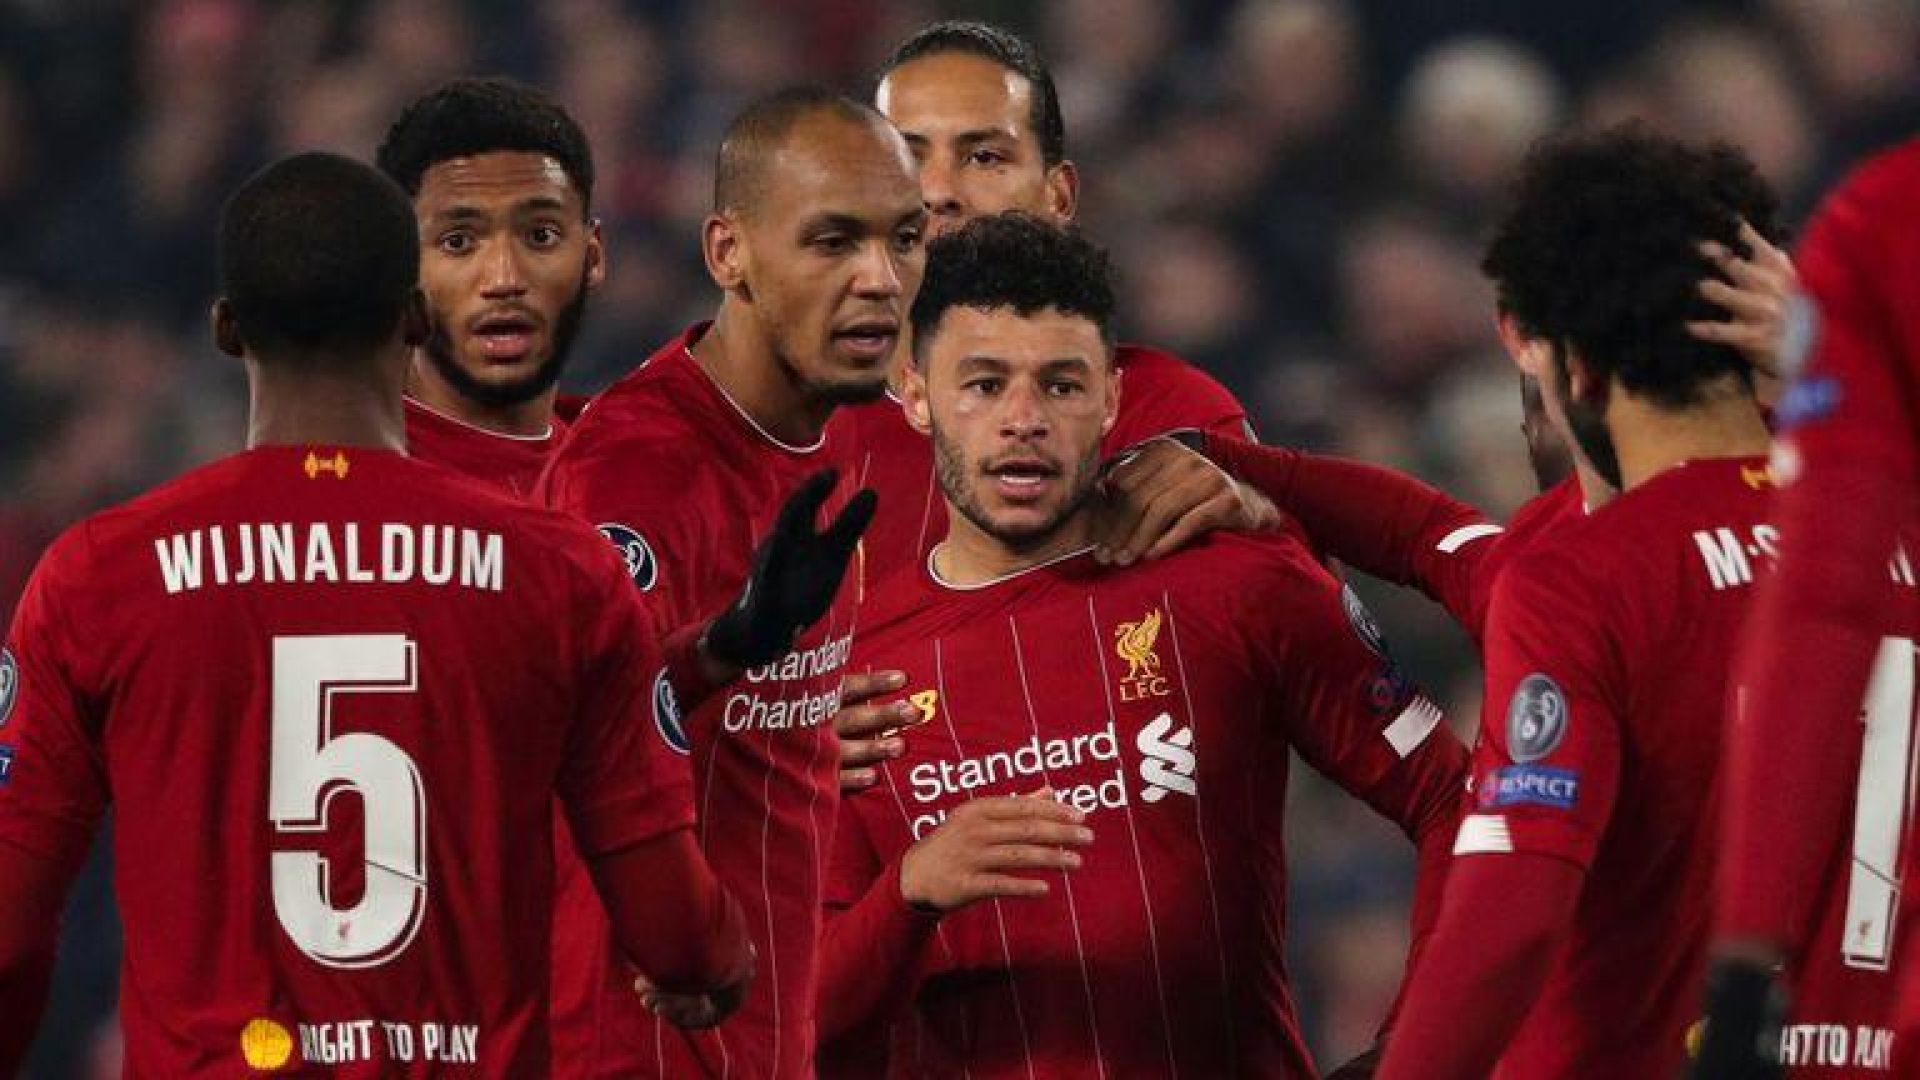 Νίκη και πρωτιά στον όμιλο | Liverpool 2-1 Genk: Match Review